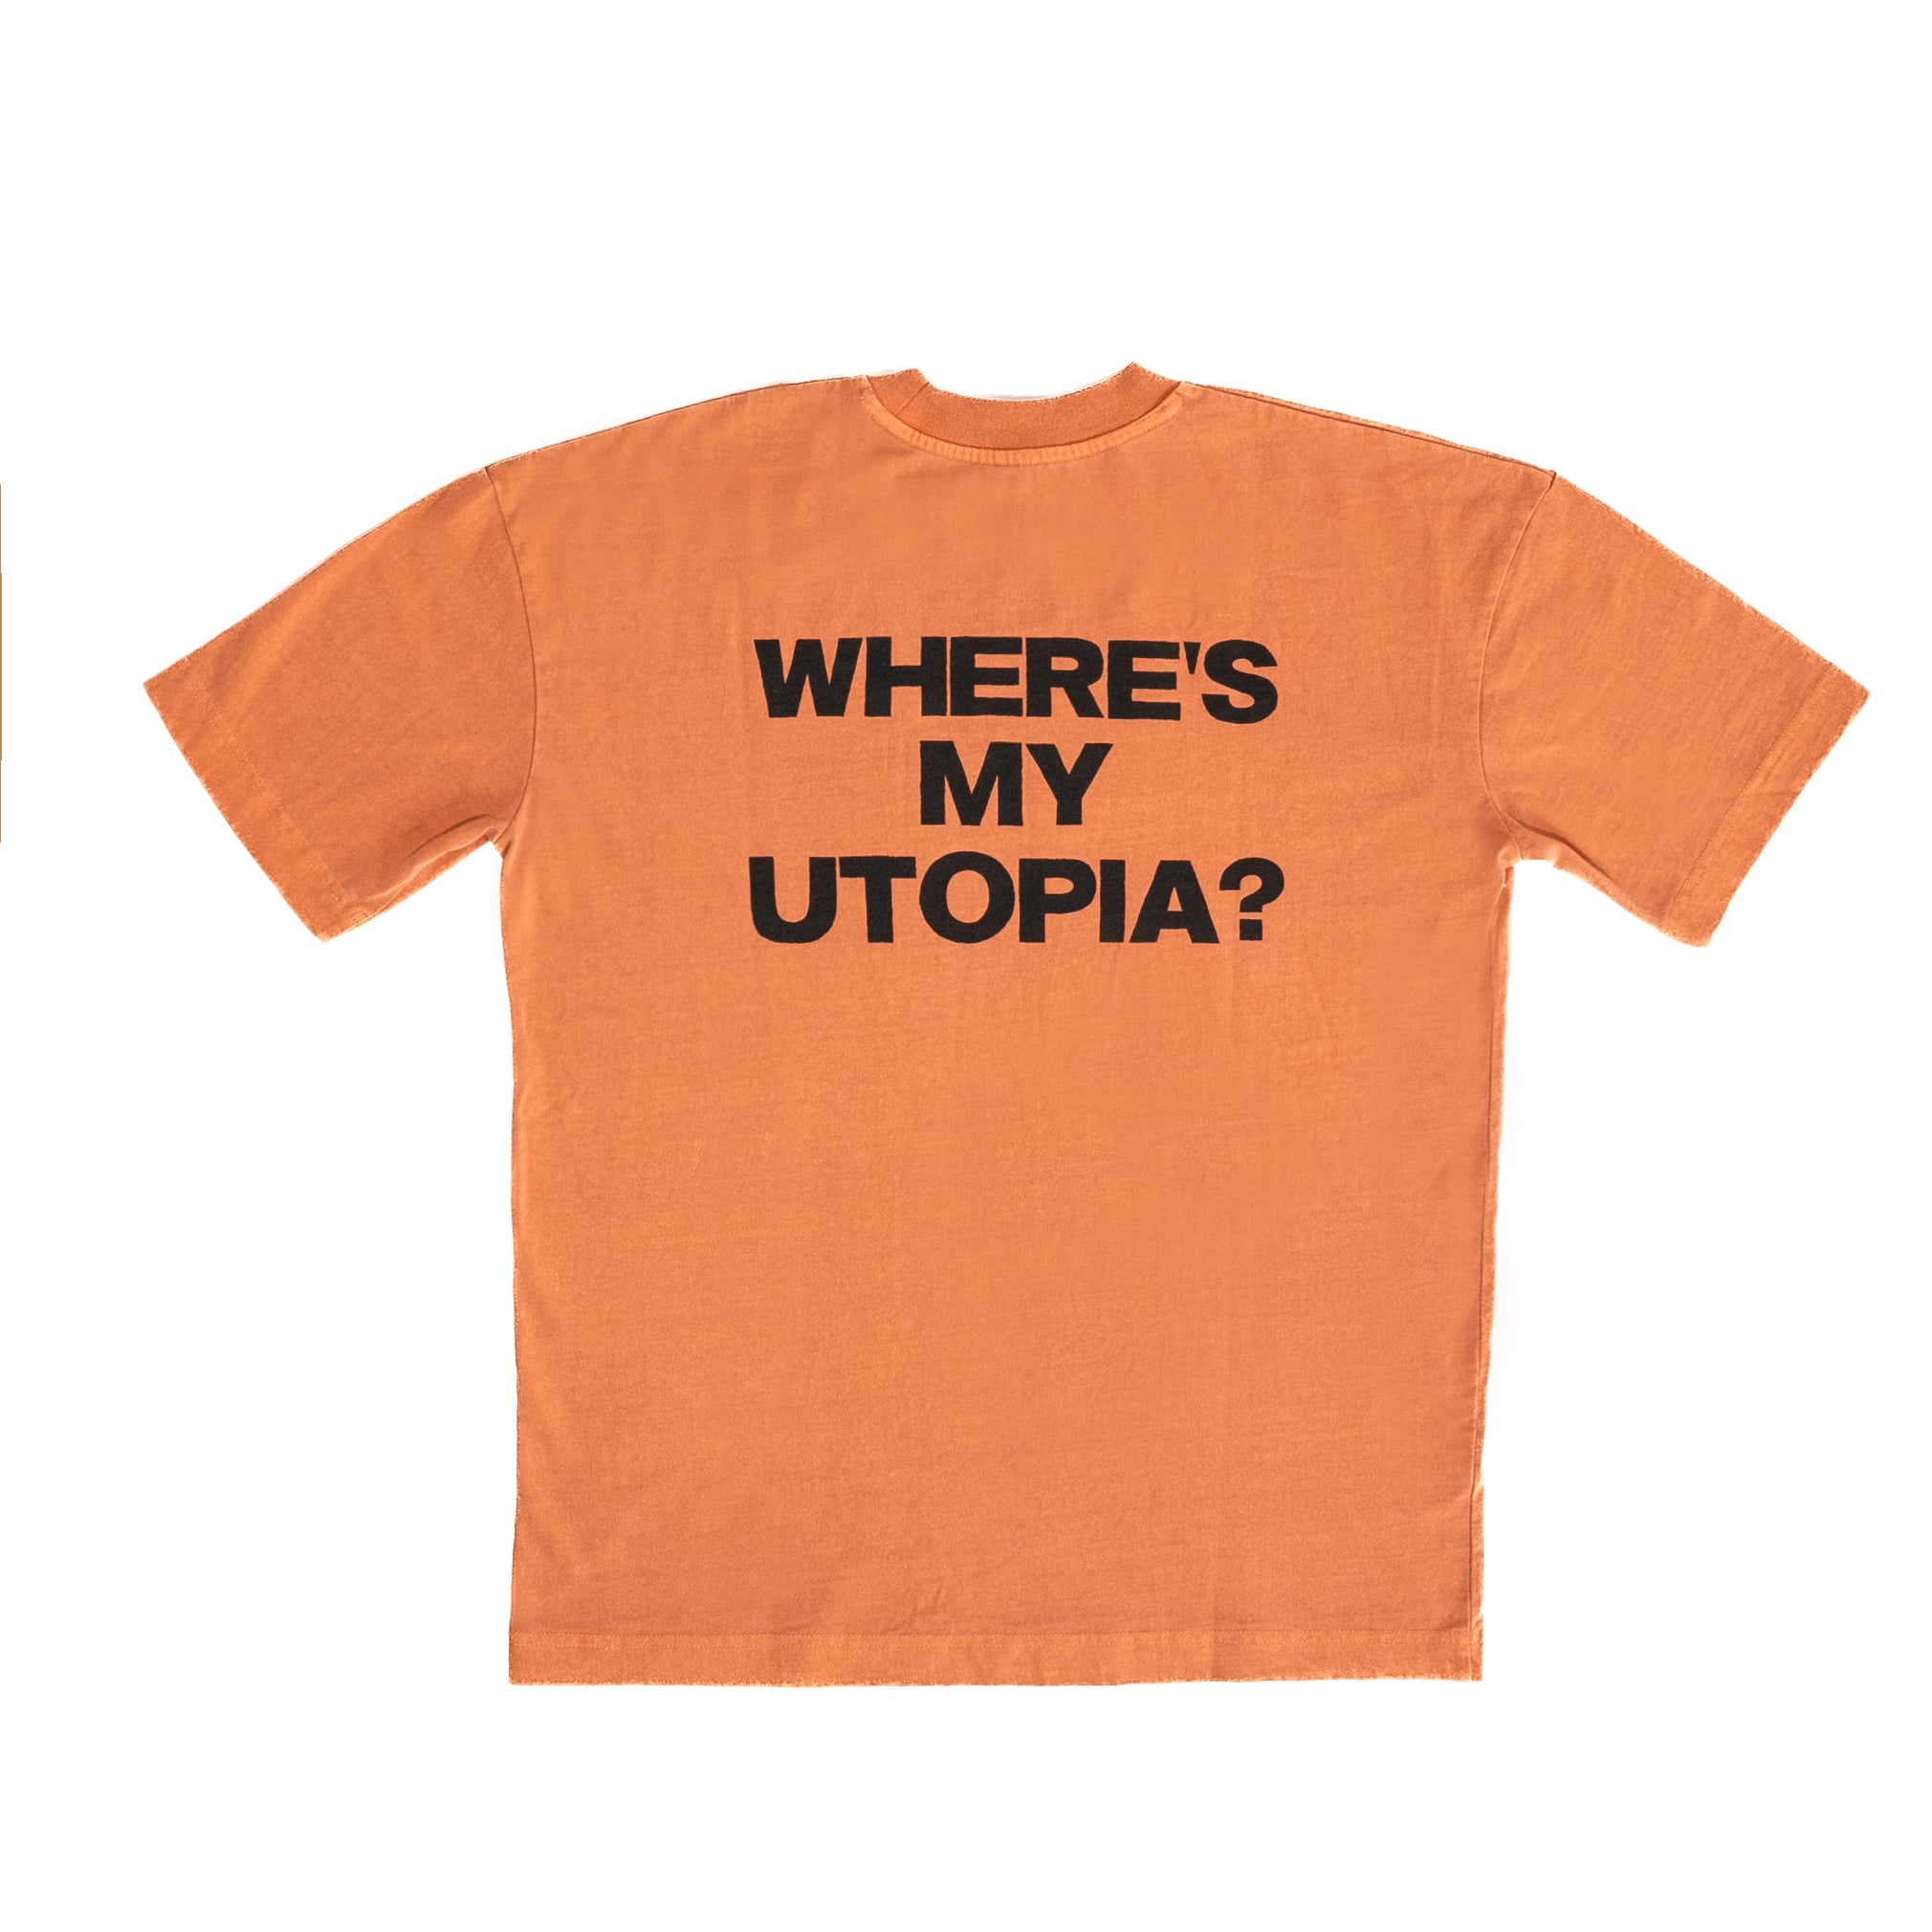 Yard Act - Where’s My Utopia?: Premium Orange Tee